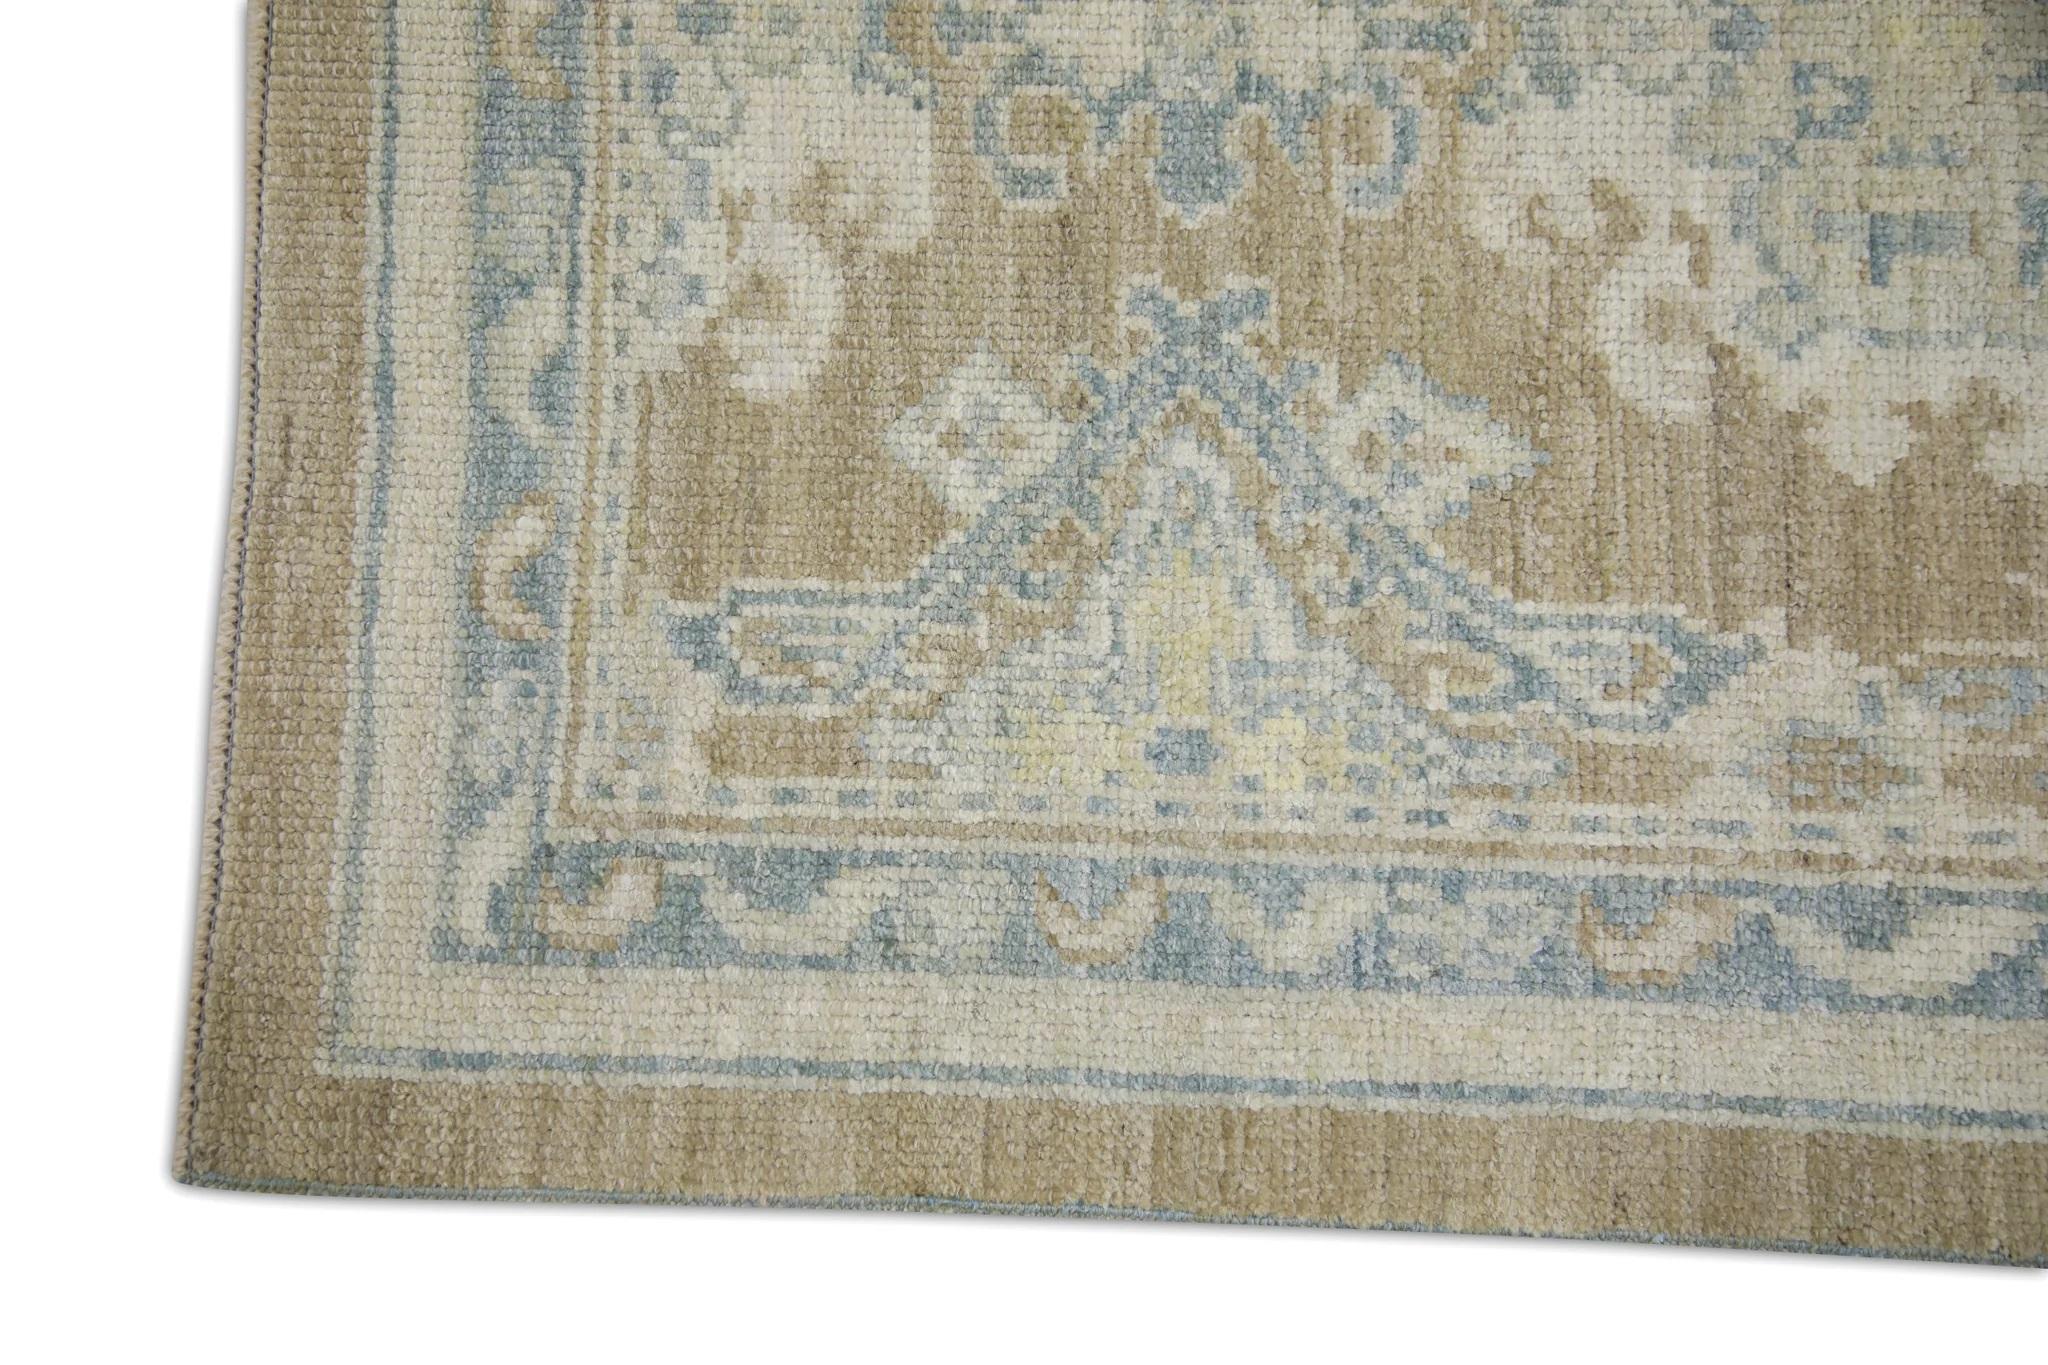 Türkischer Oushak-Teppich aus brauner handgewebter Wolle in blauem, geblümtem Design 2'10